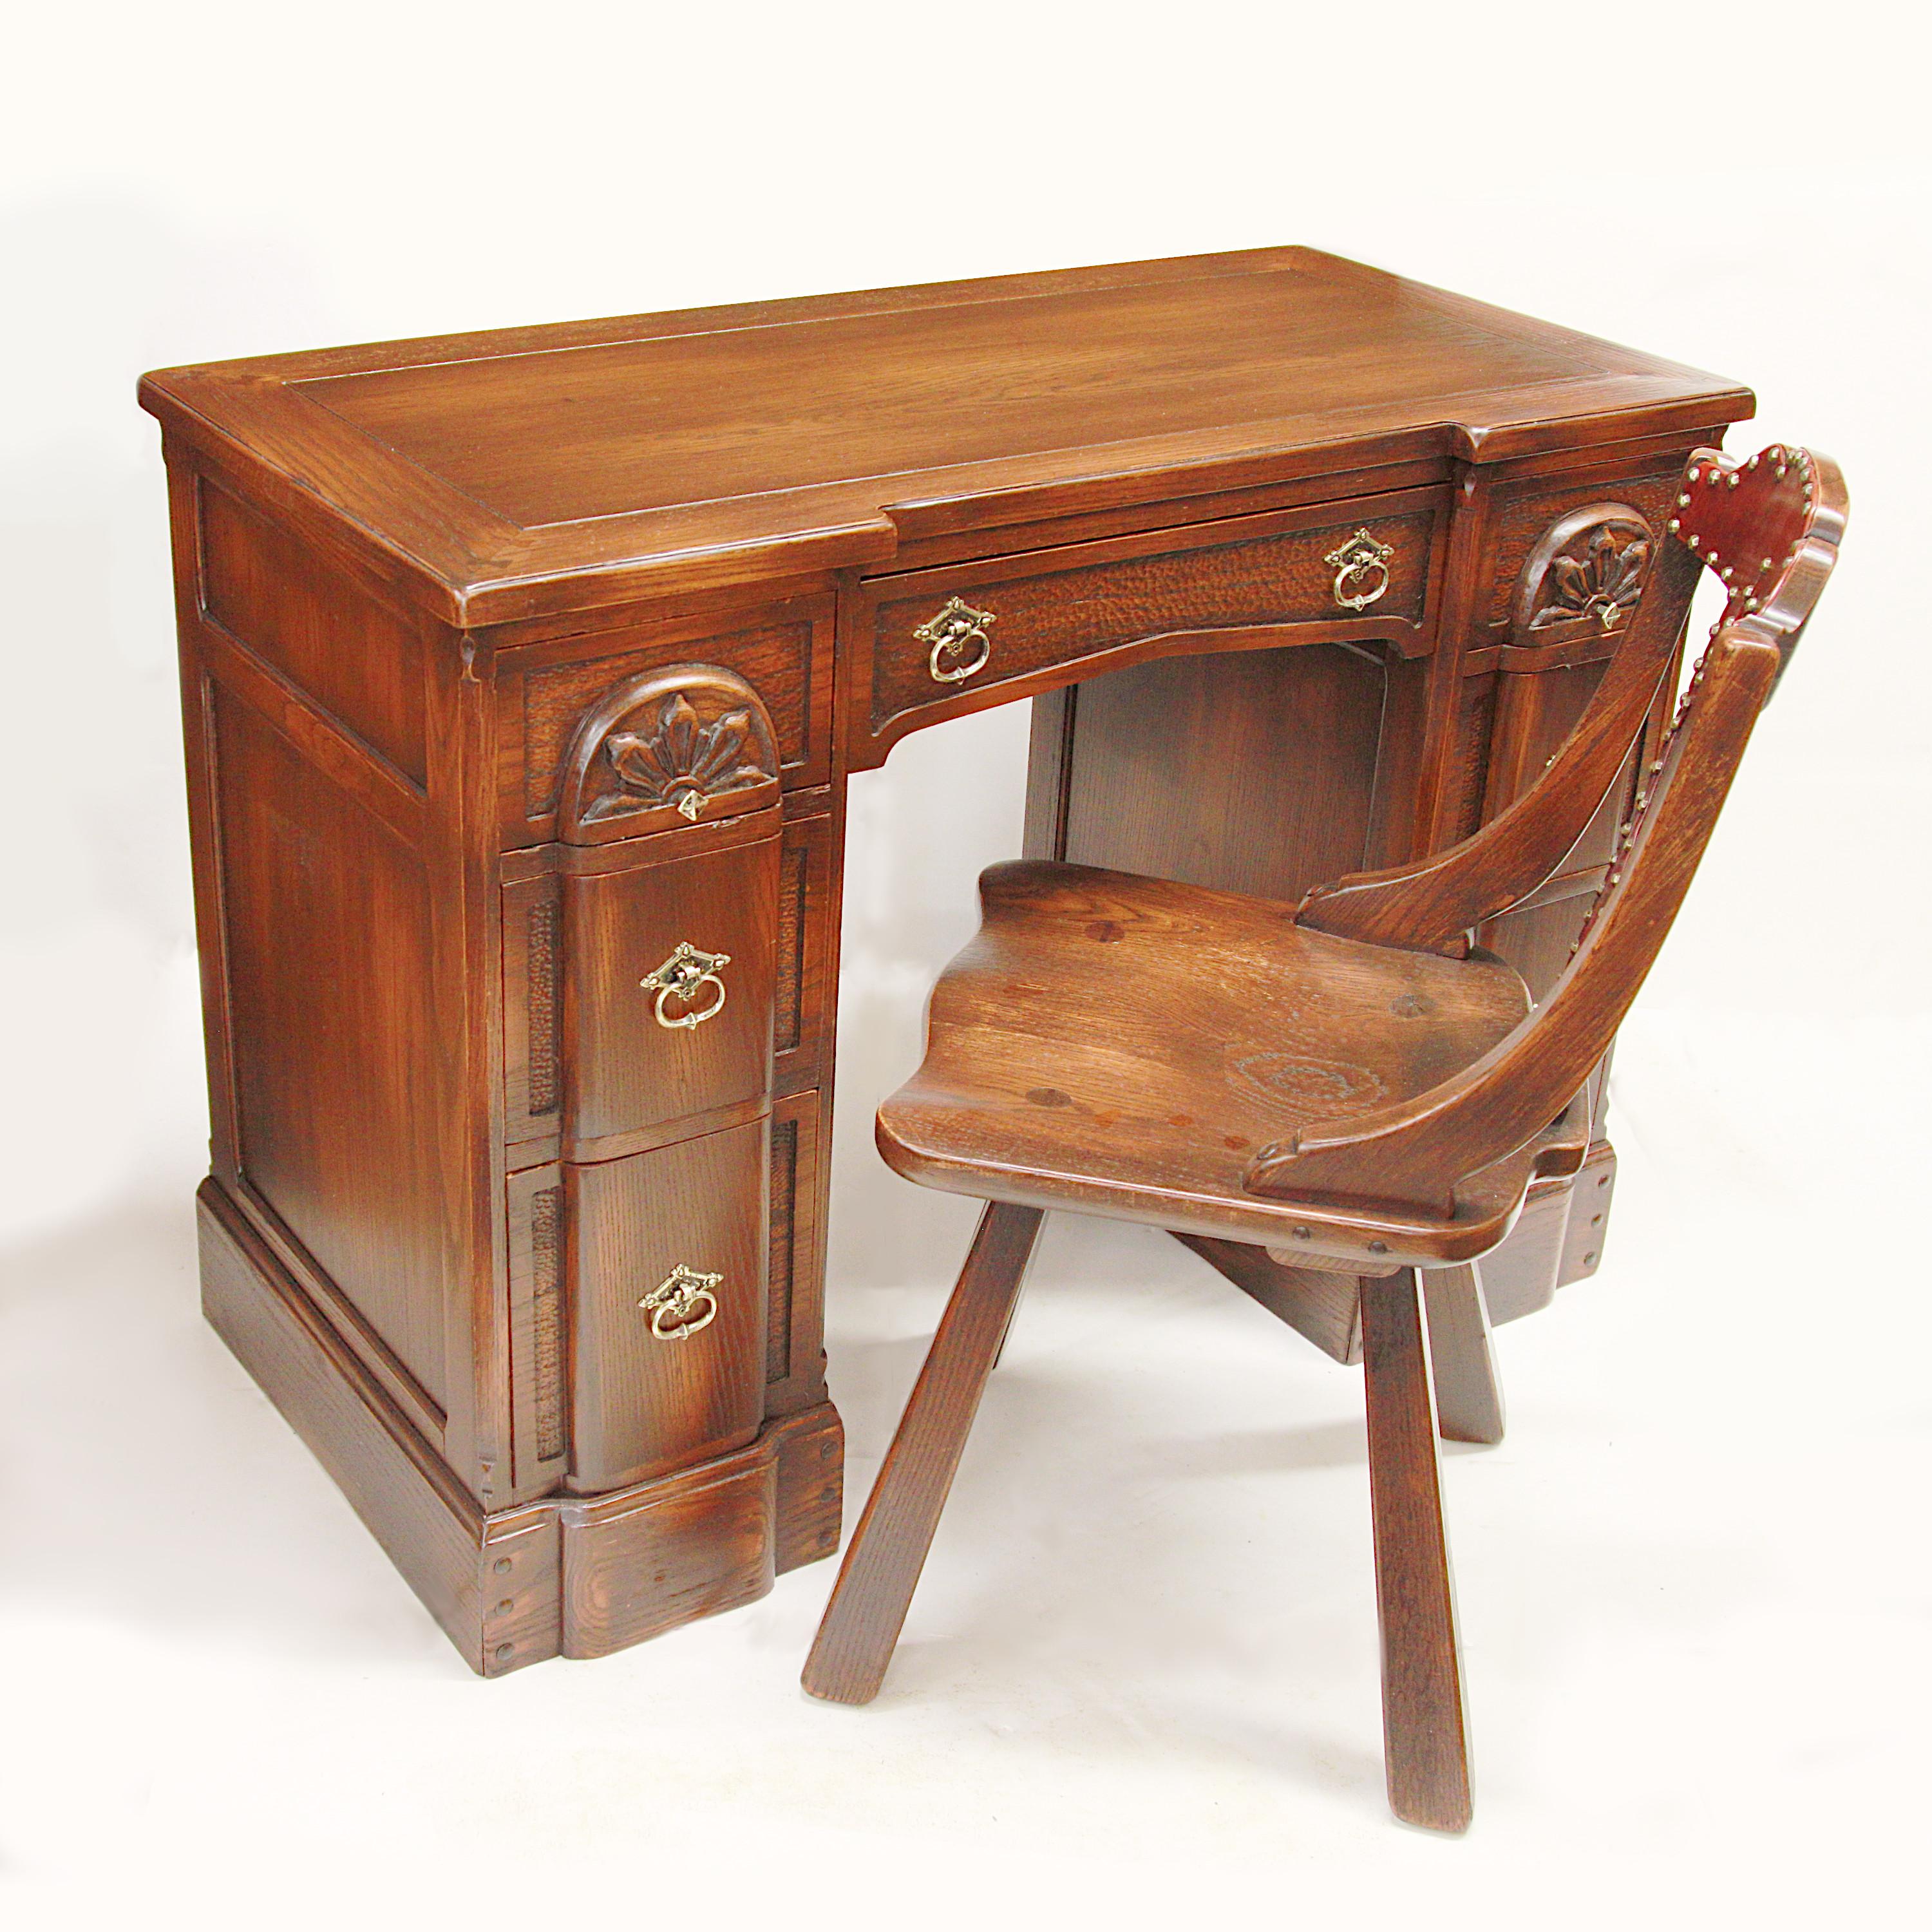 Ausgezeichneter Vintage-Schreibtisch im Viking Oak-Stil von der Romweber Furniture Co. aus Batesville, IN. Dieser charmante Schreibtisch zeichnet sich durch wunderbare reliefgeschnitzte Details, eine solide Eichenkonstruktion und massive